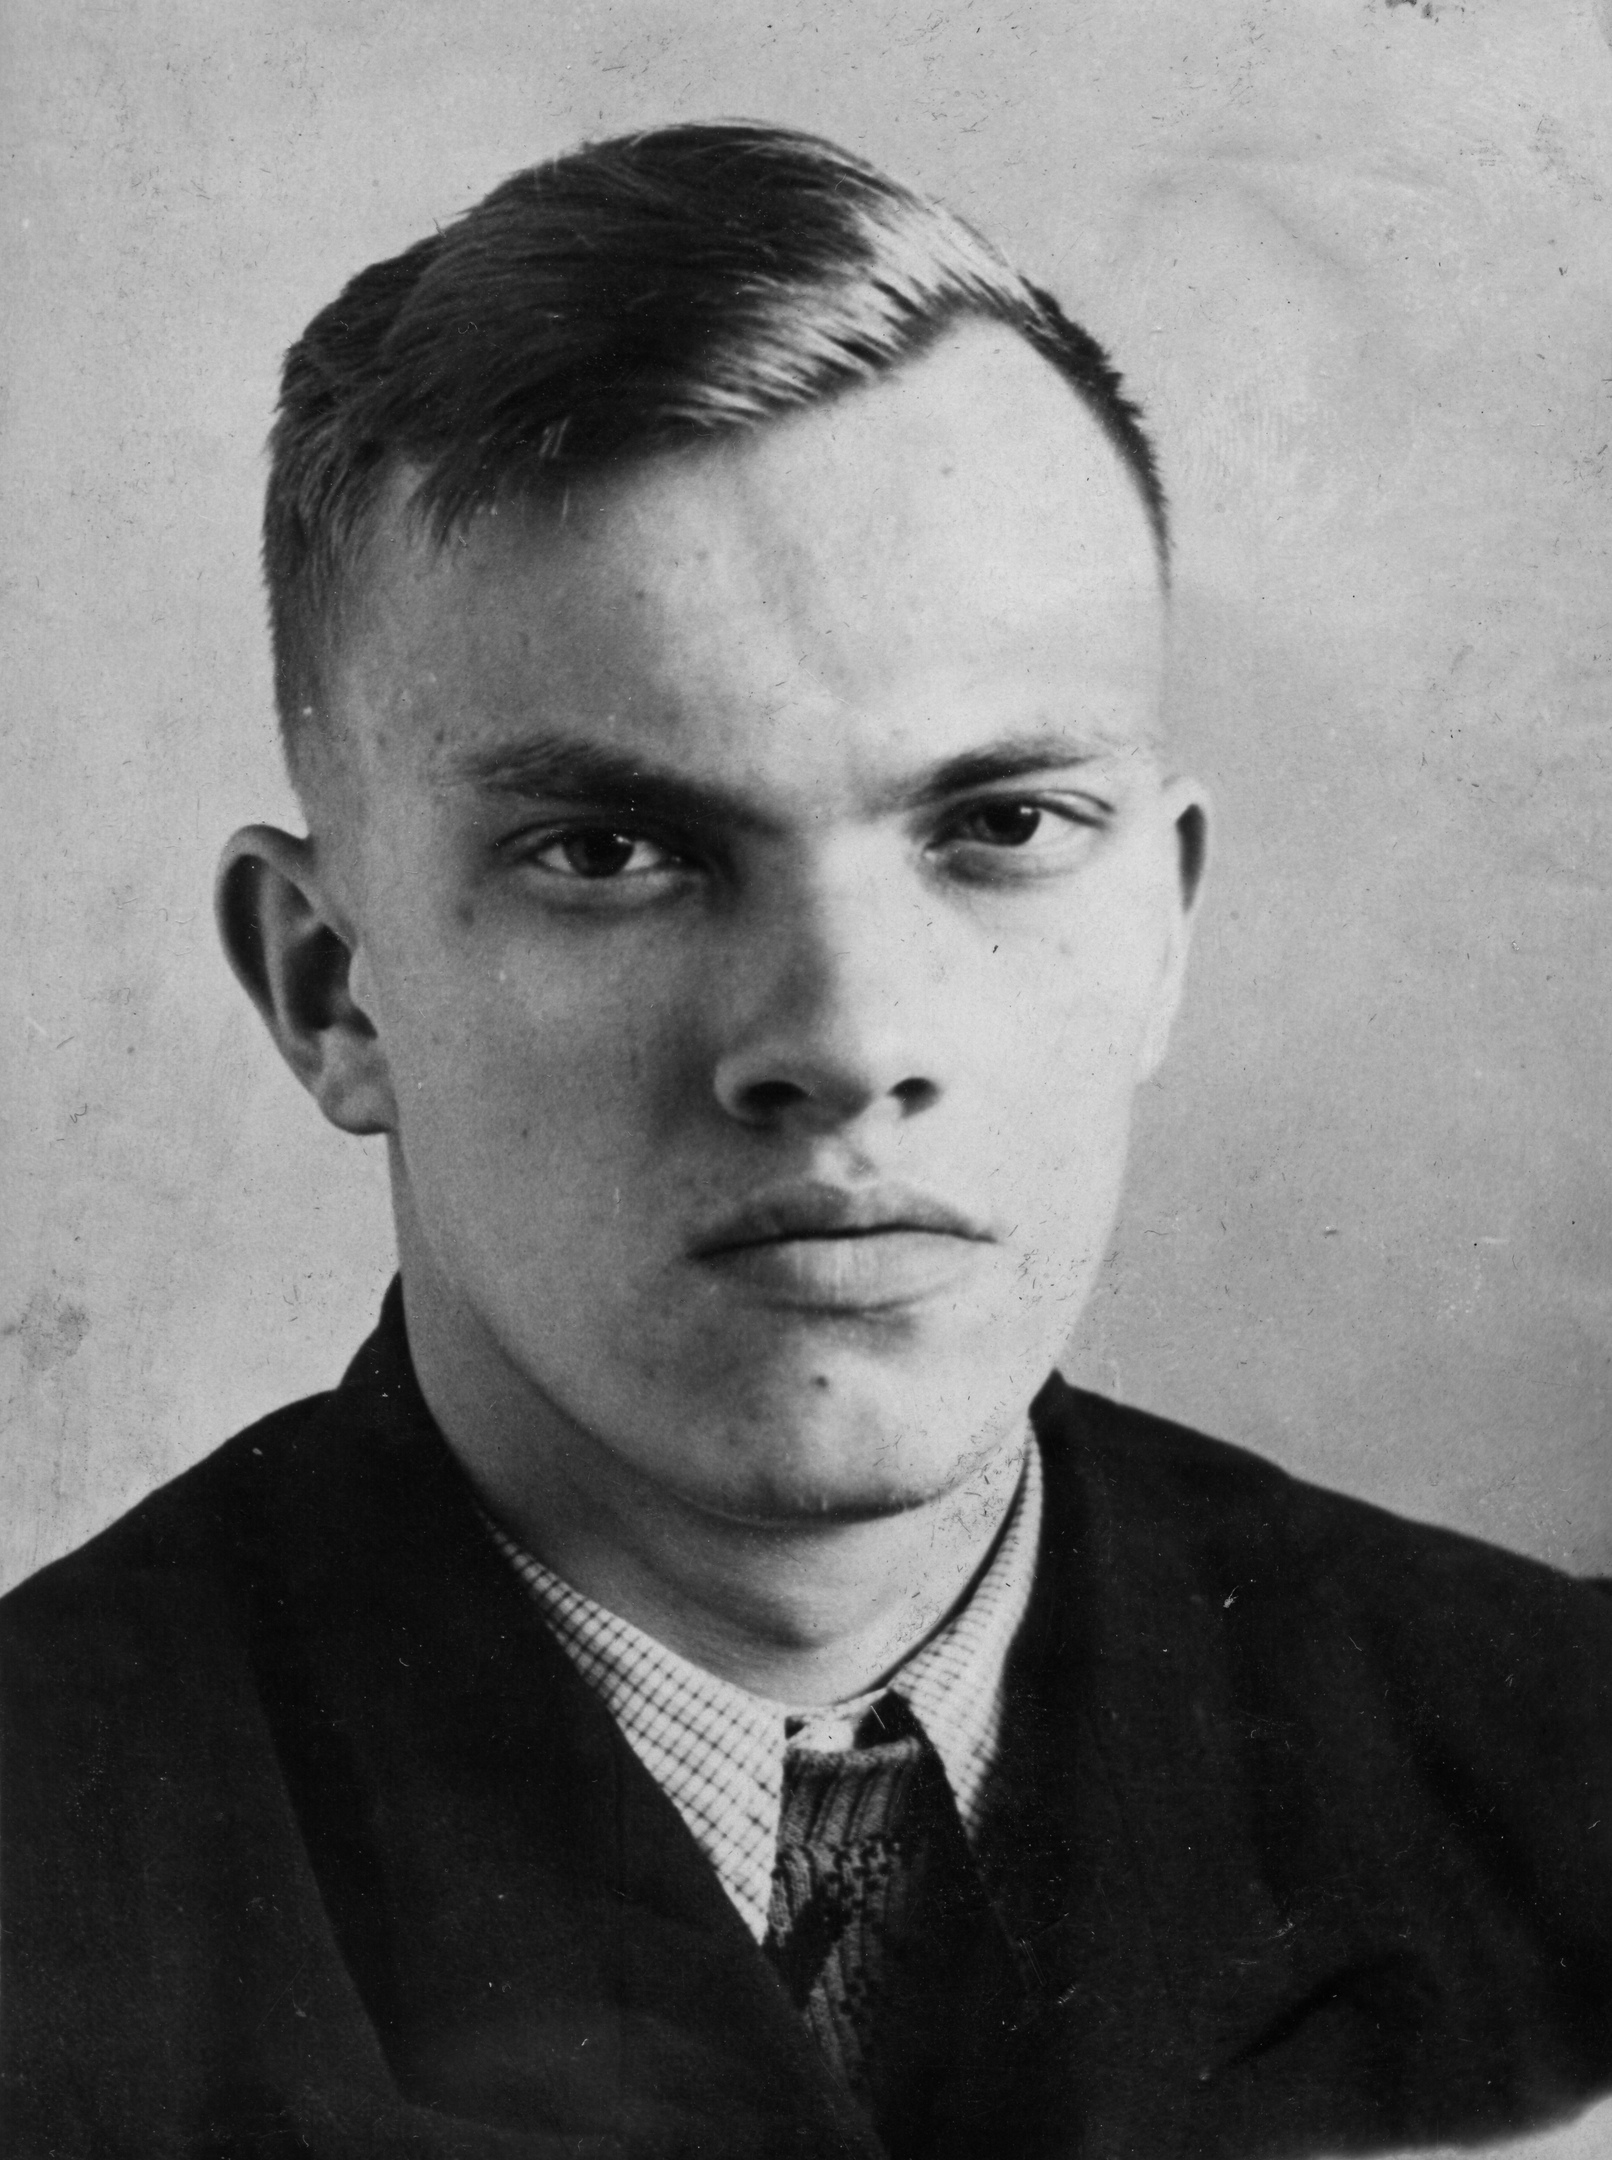 Фото было сделано в 1958 году. В то время Владимир Третьяков занимал должность секретаря комитета ВЛКСМ УрГУ 